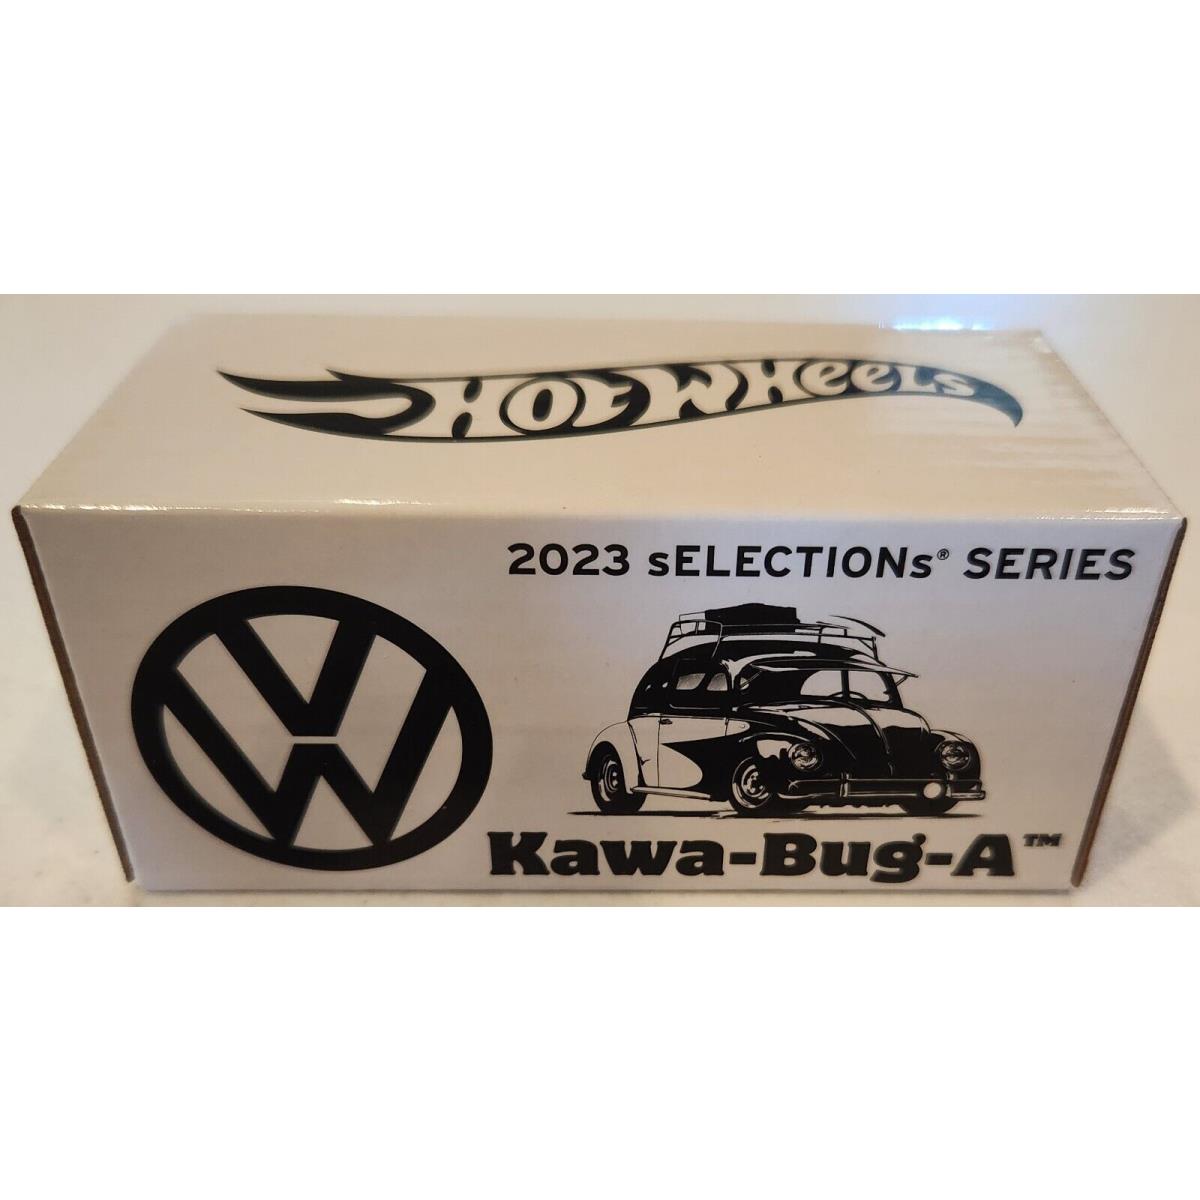 Hot Wheels 2023 Rlc Kawa-bug-a Magenta VW Beetle Selections Box